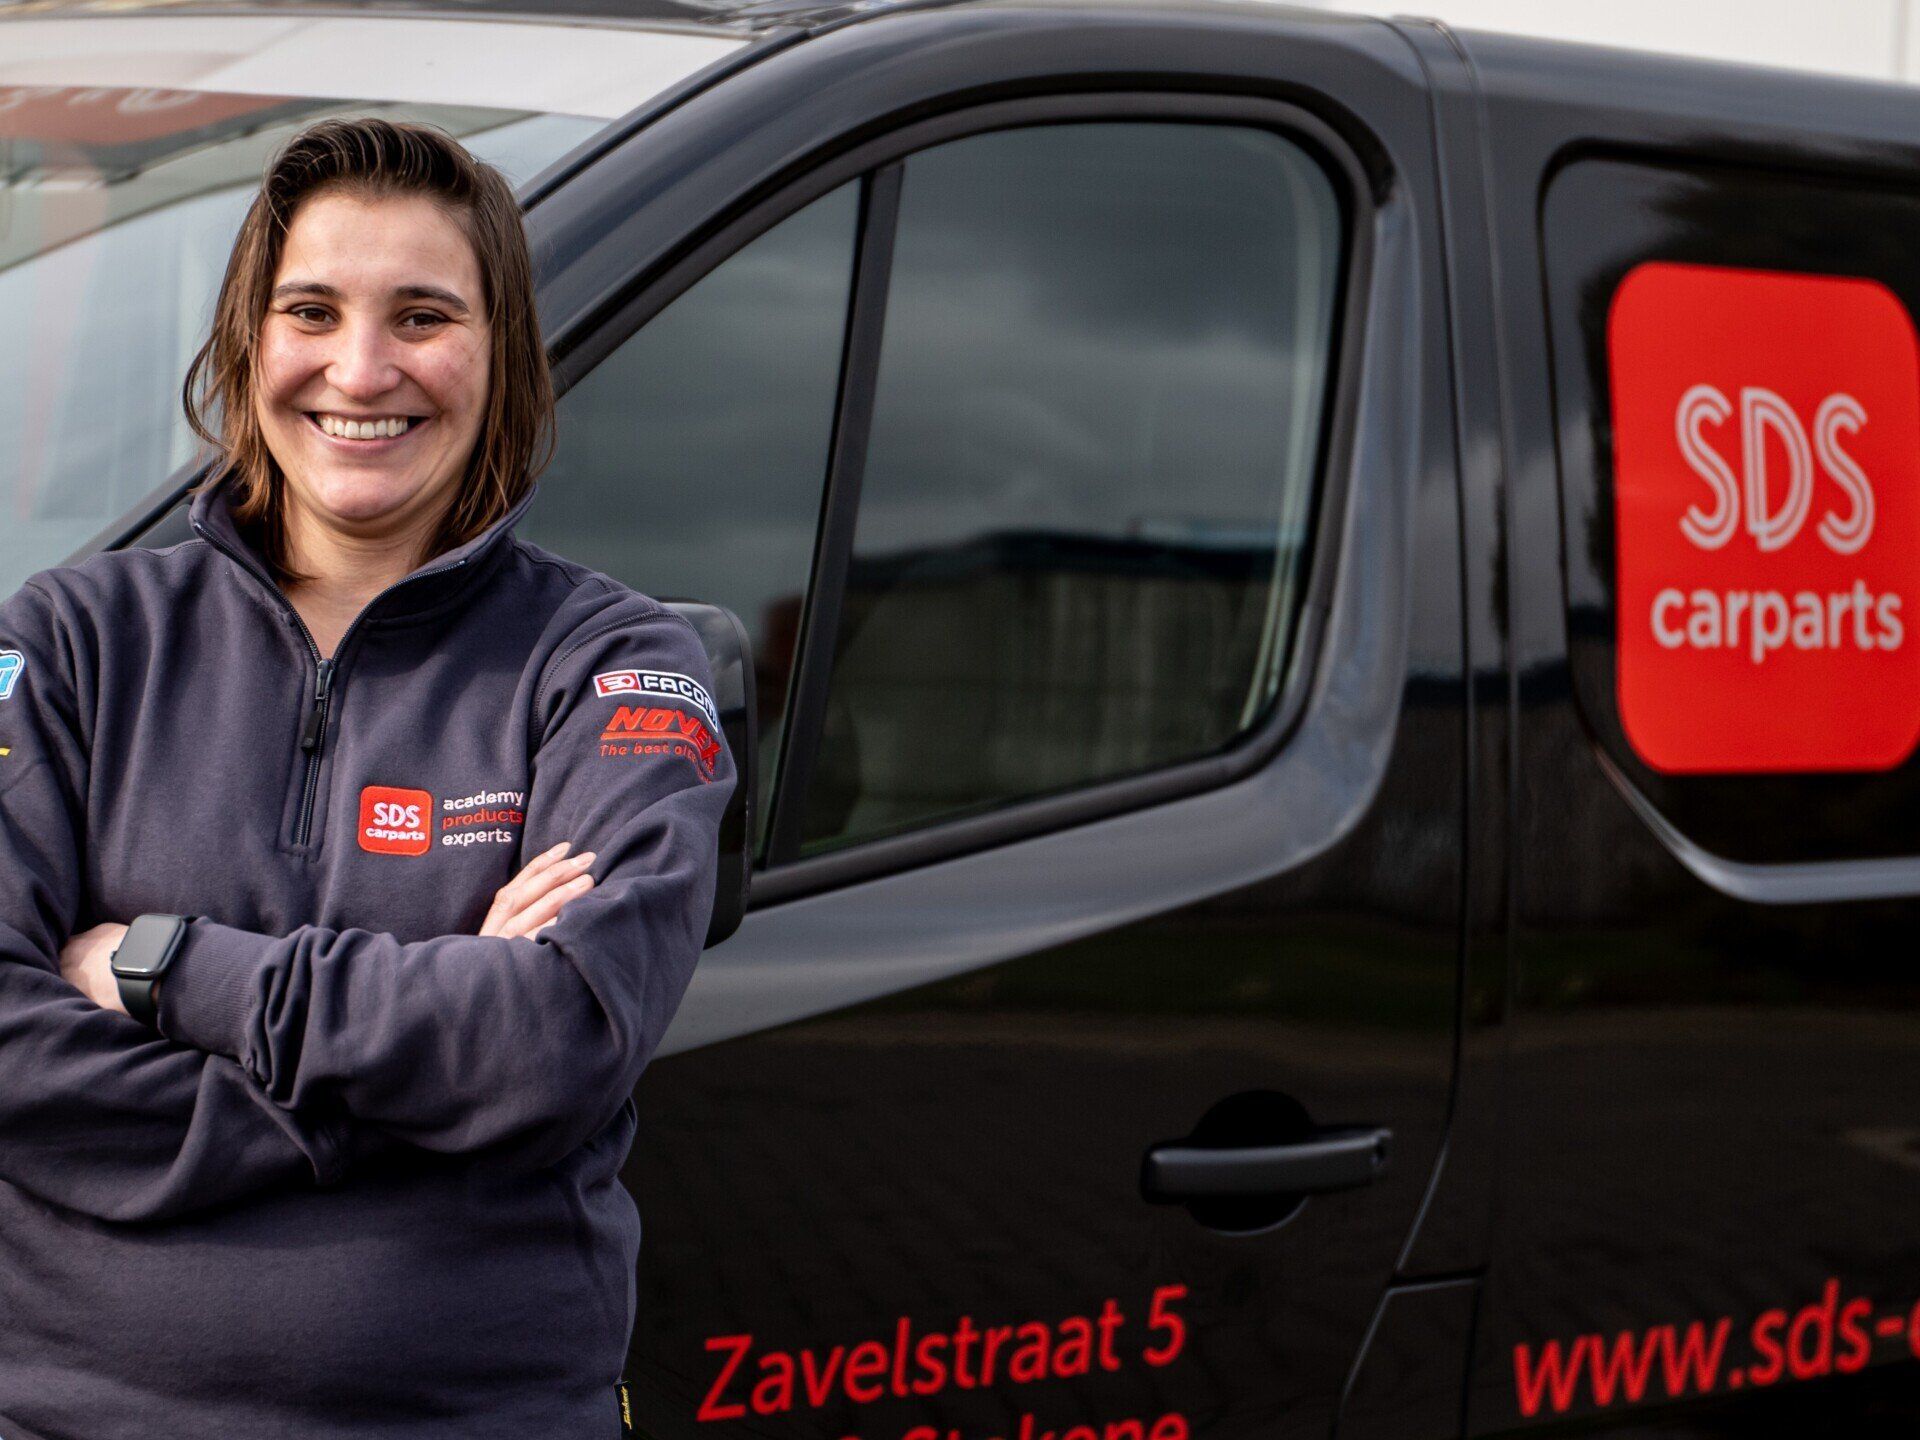 SDS Carparts | Sales manager Elke De Baets